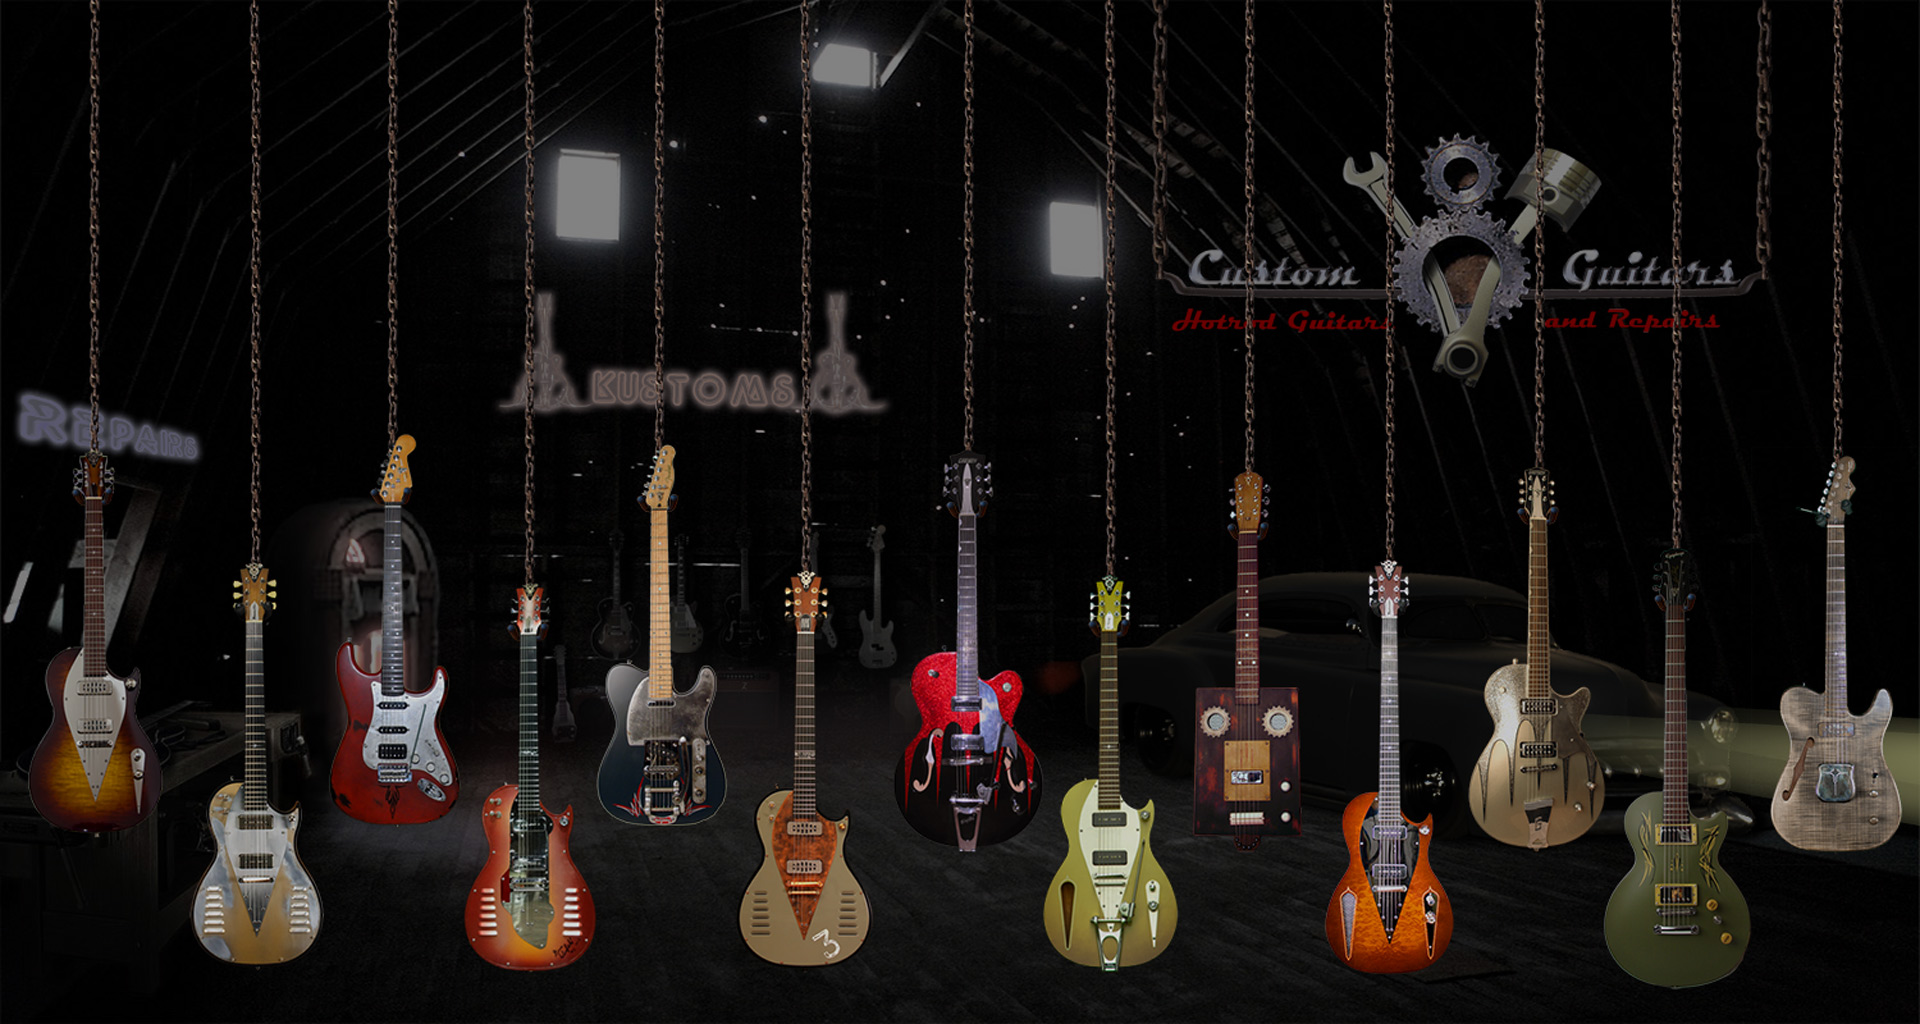 V8CustomGuittars-Guitars.jpg